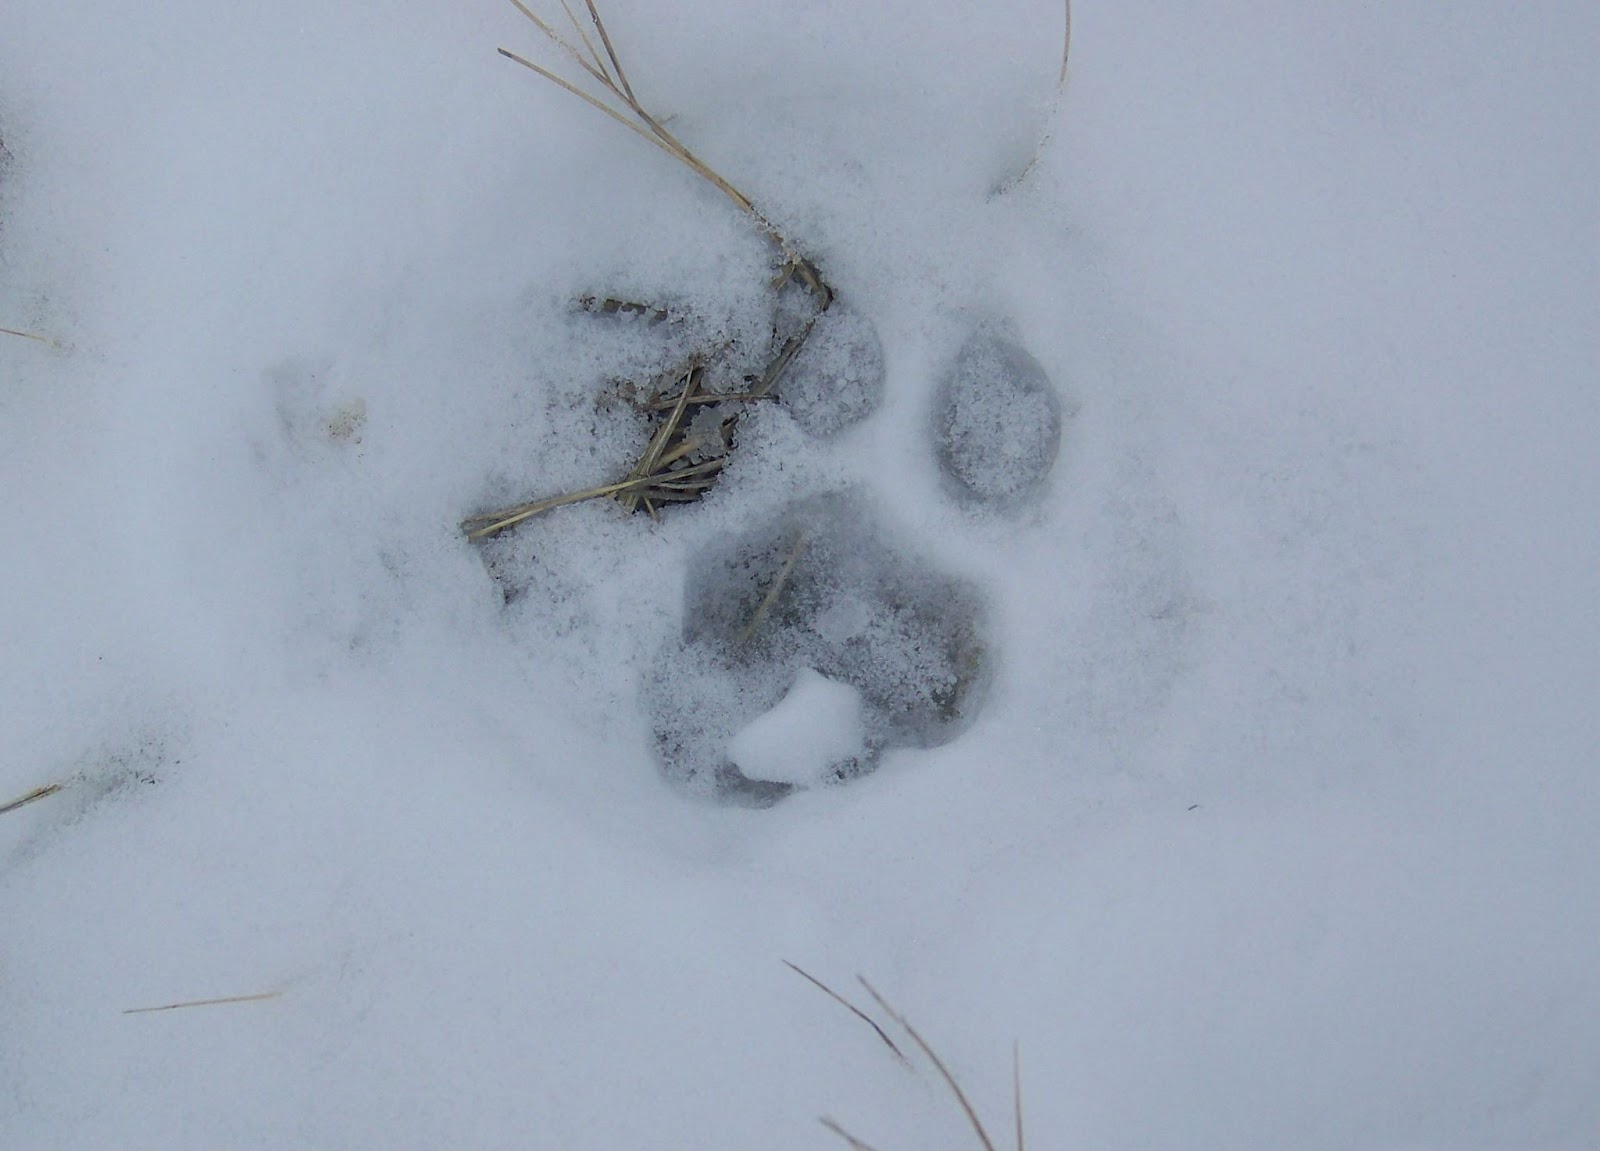 Mountain lion paw print in snow.